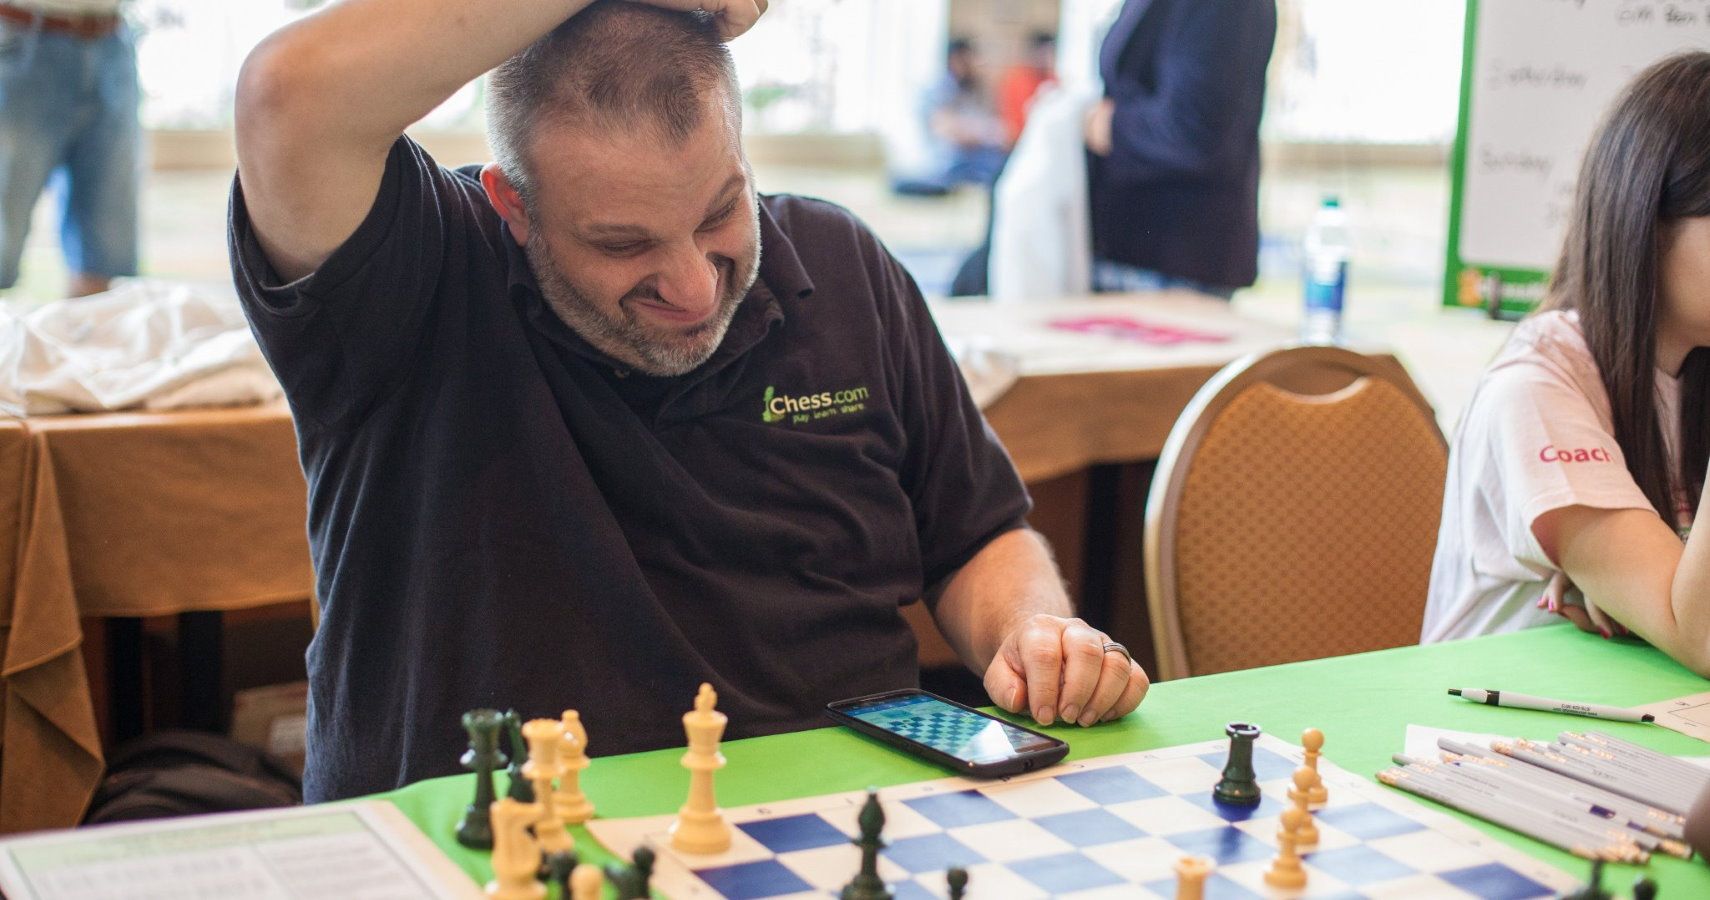 GM Ben Finegold Not Impressed 😅 #chess #chesstok #chessplayer #chessp, chess grandmaster